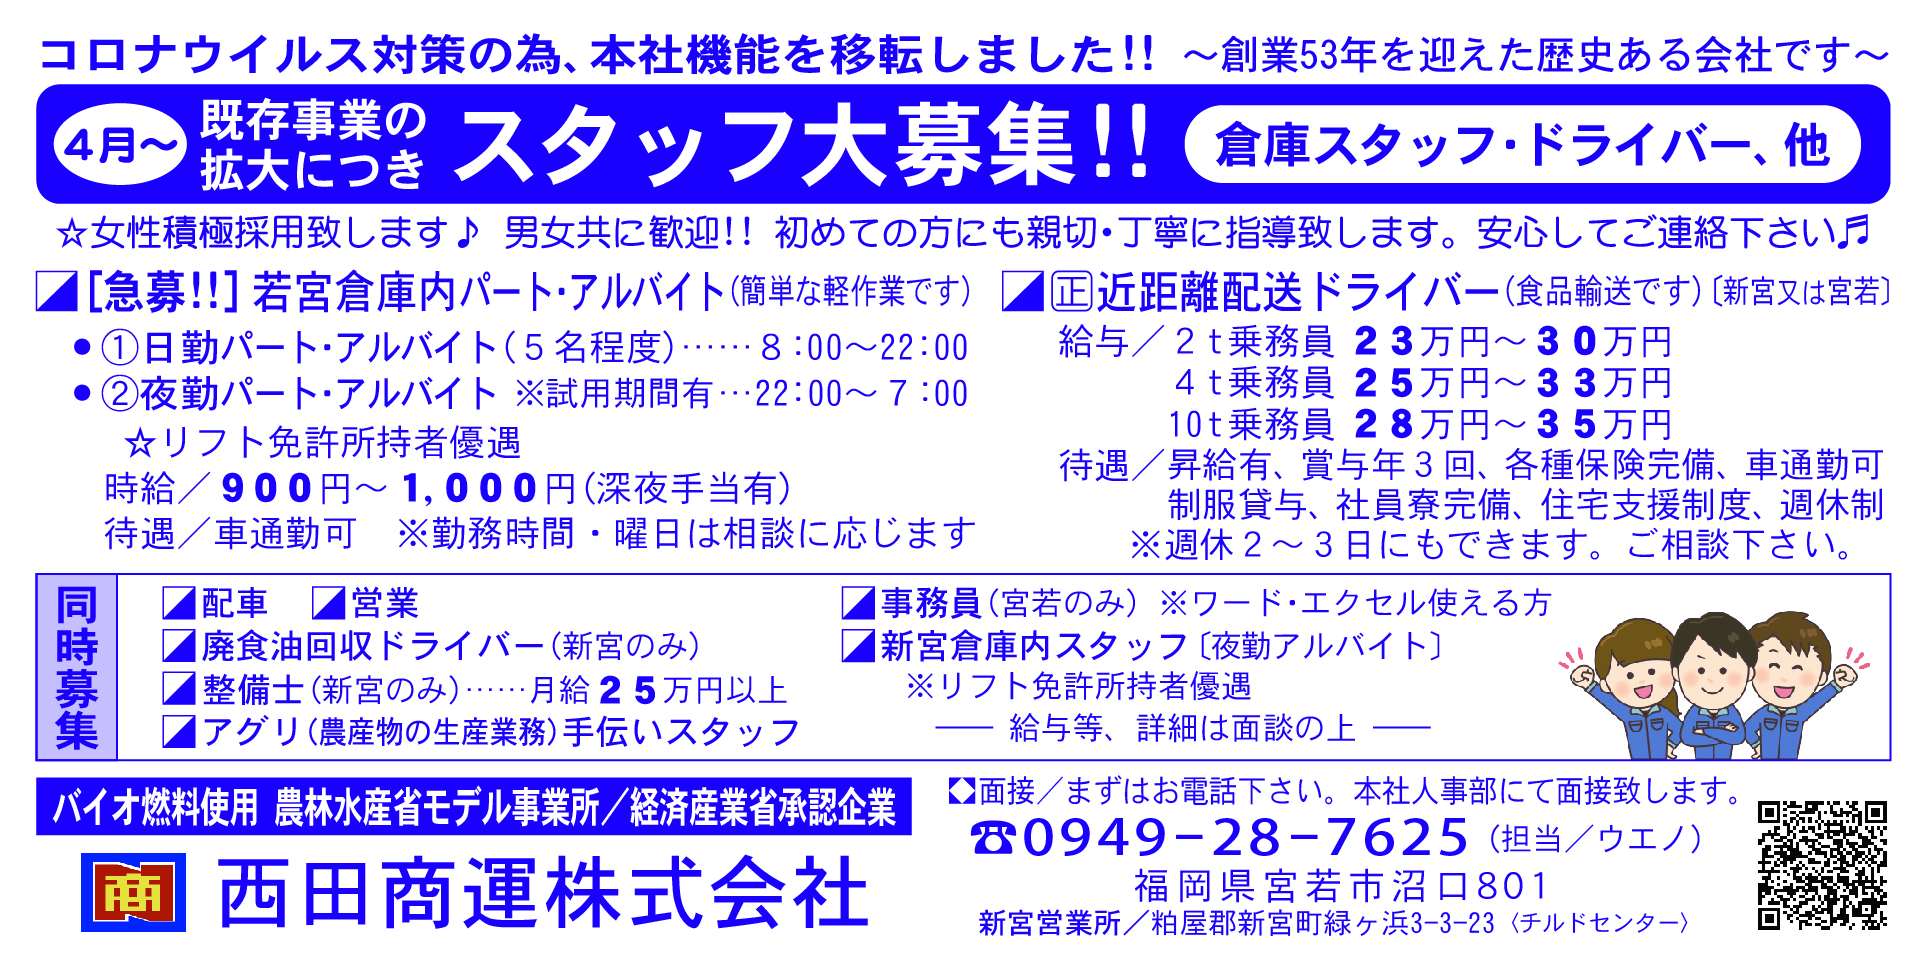 西田商運7-11